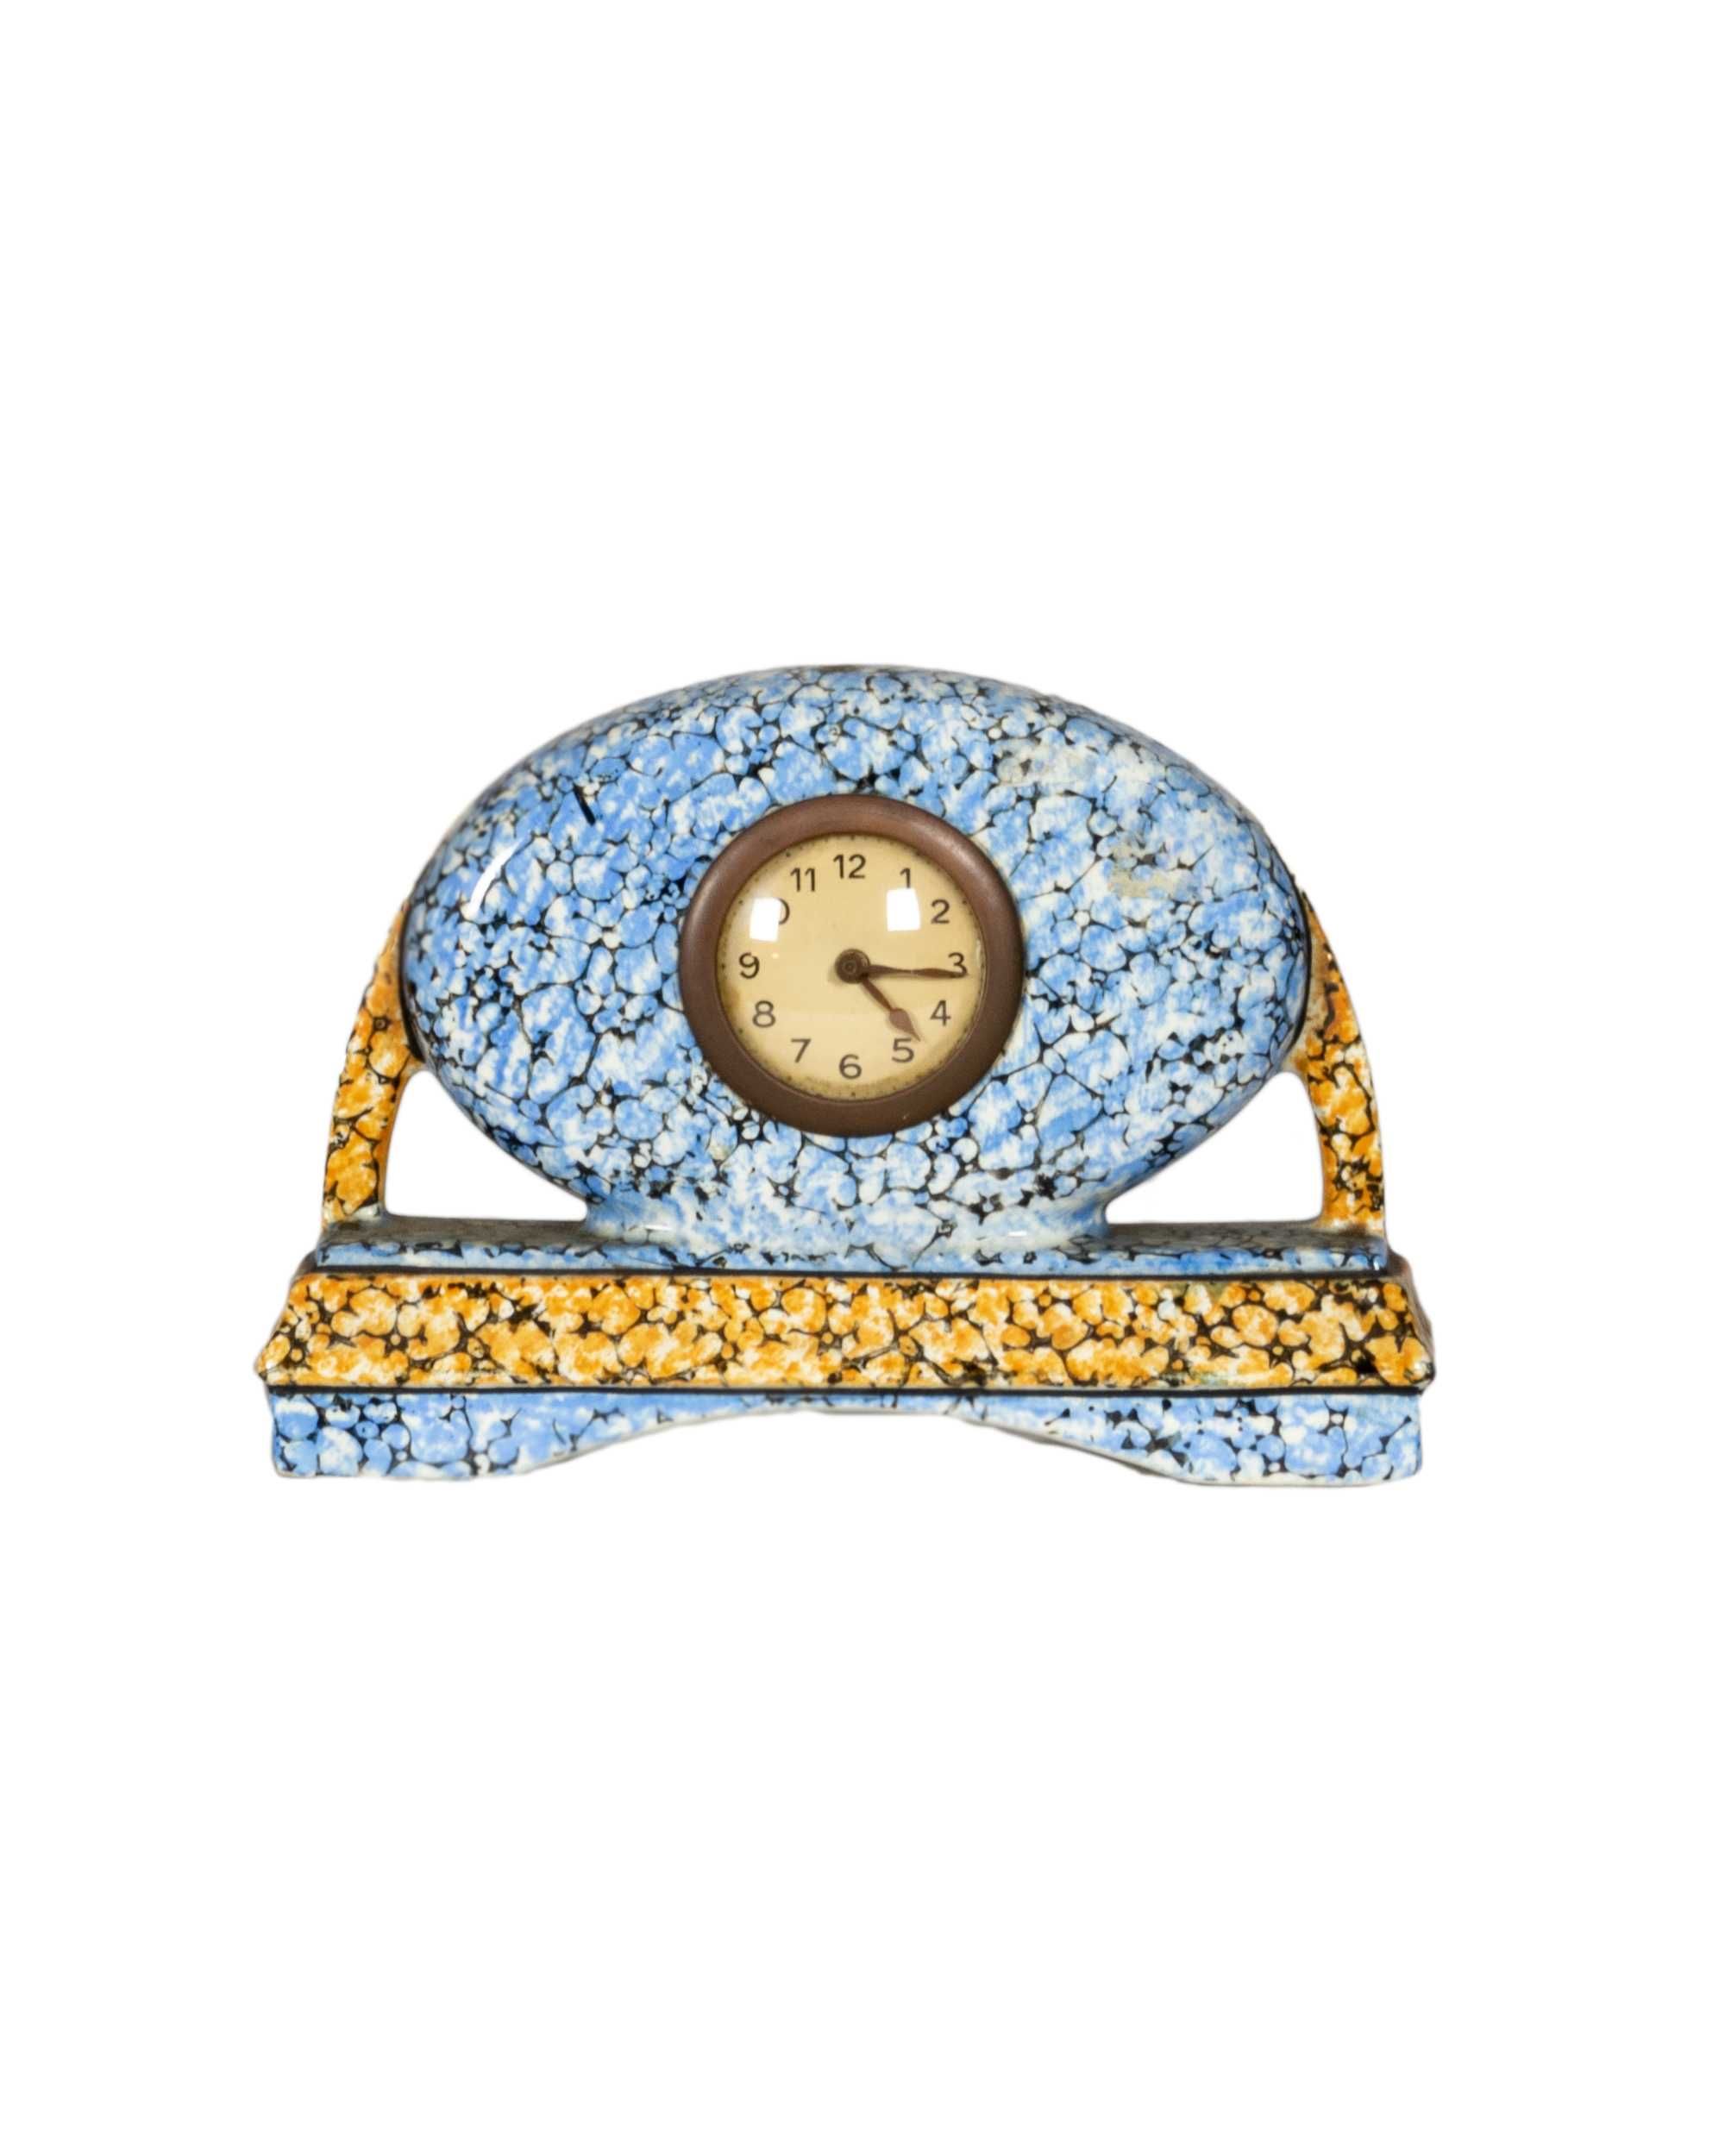 Relógio faiança Majolique Wasmuel art deco | século XX